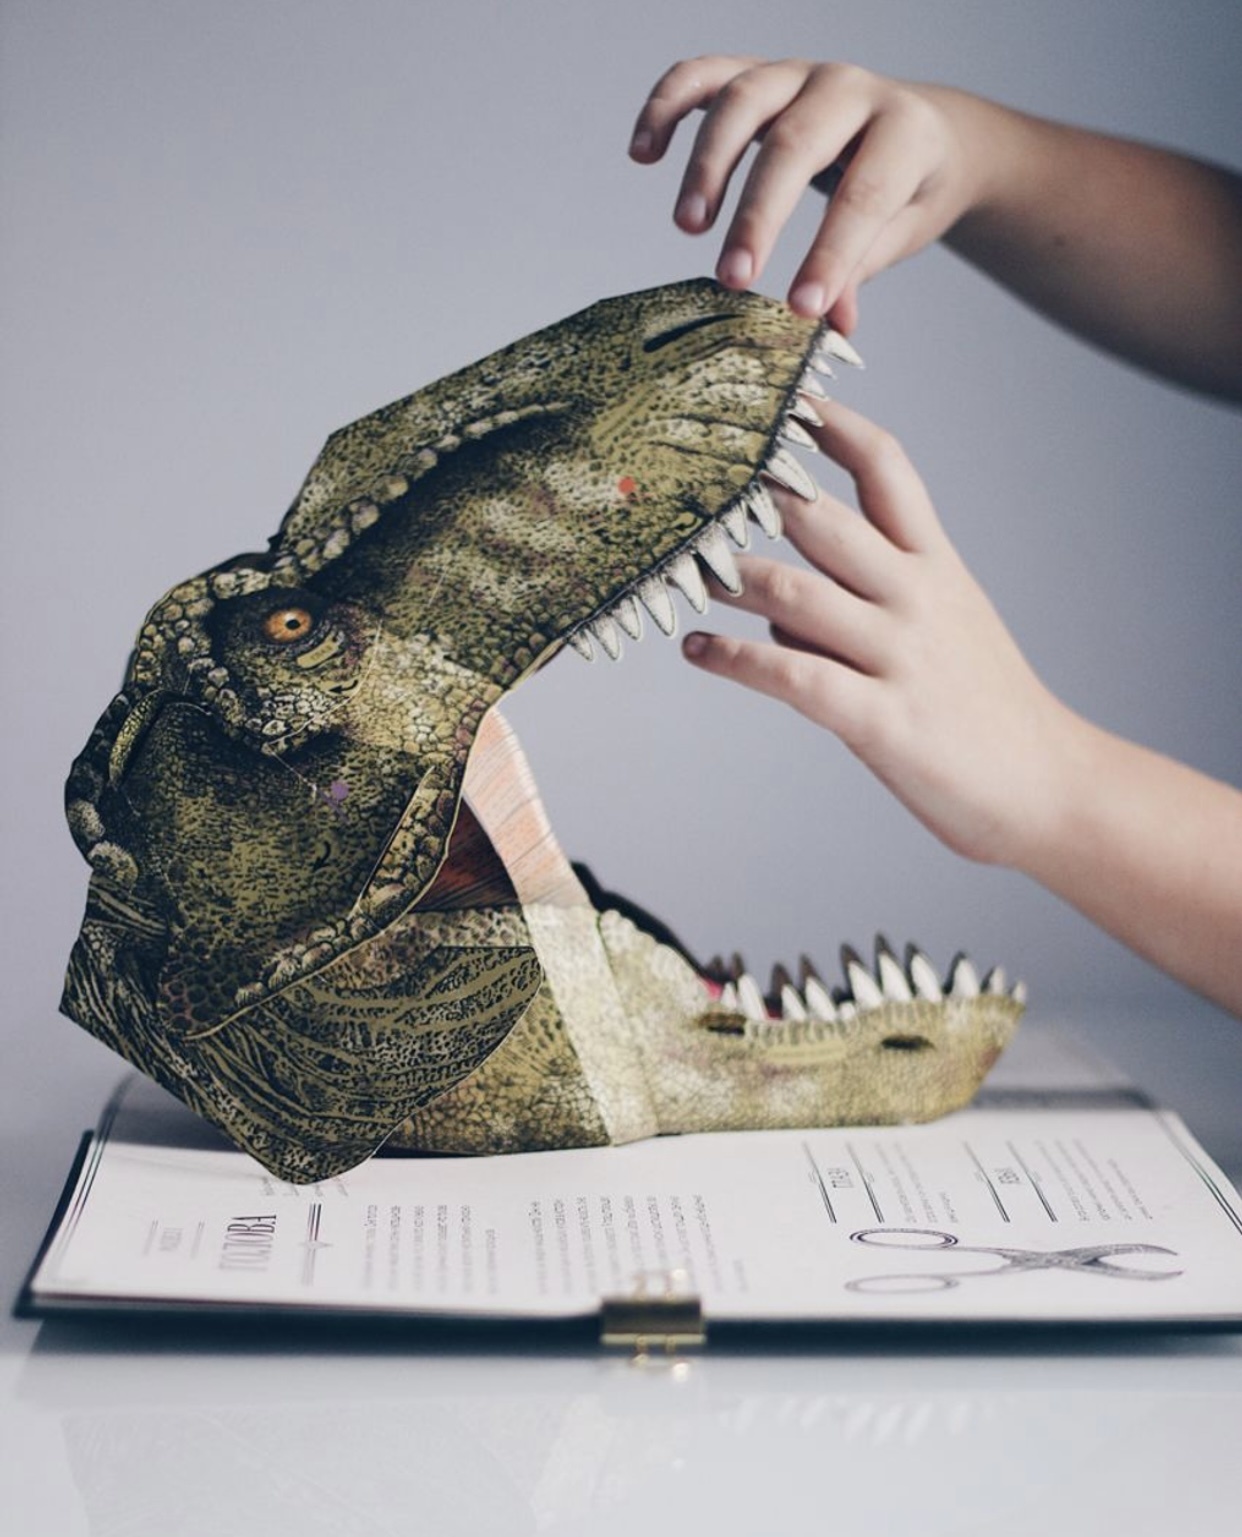 Тираннозавр рекс. Интерактивная книга-панорама. Автор — Дугал Диксон. 